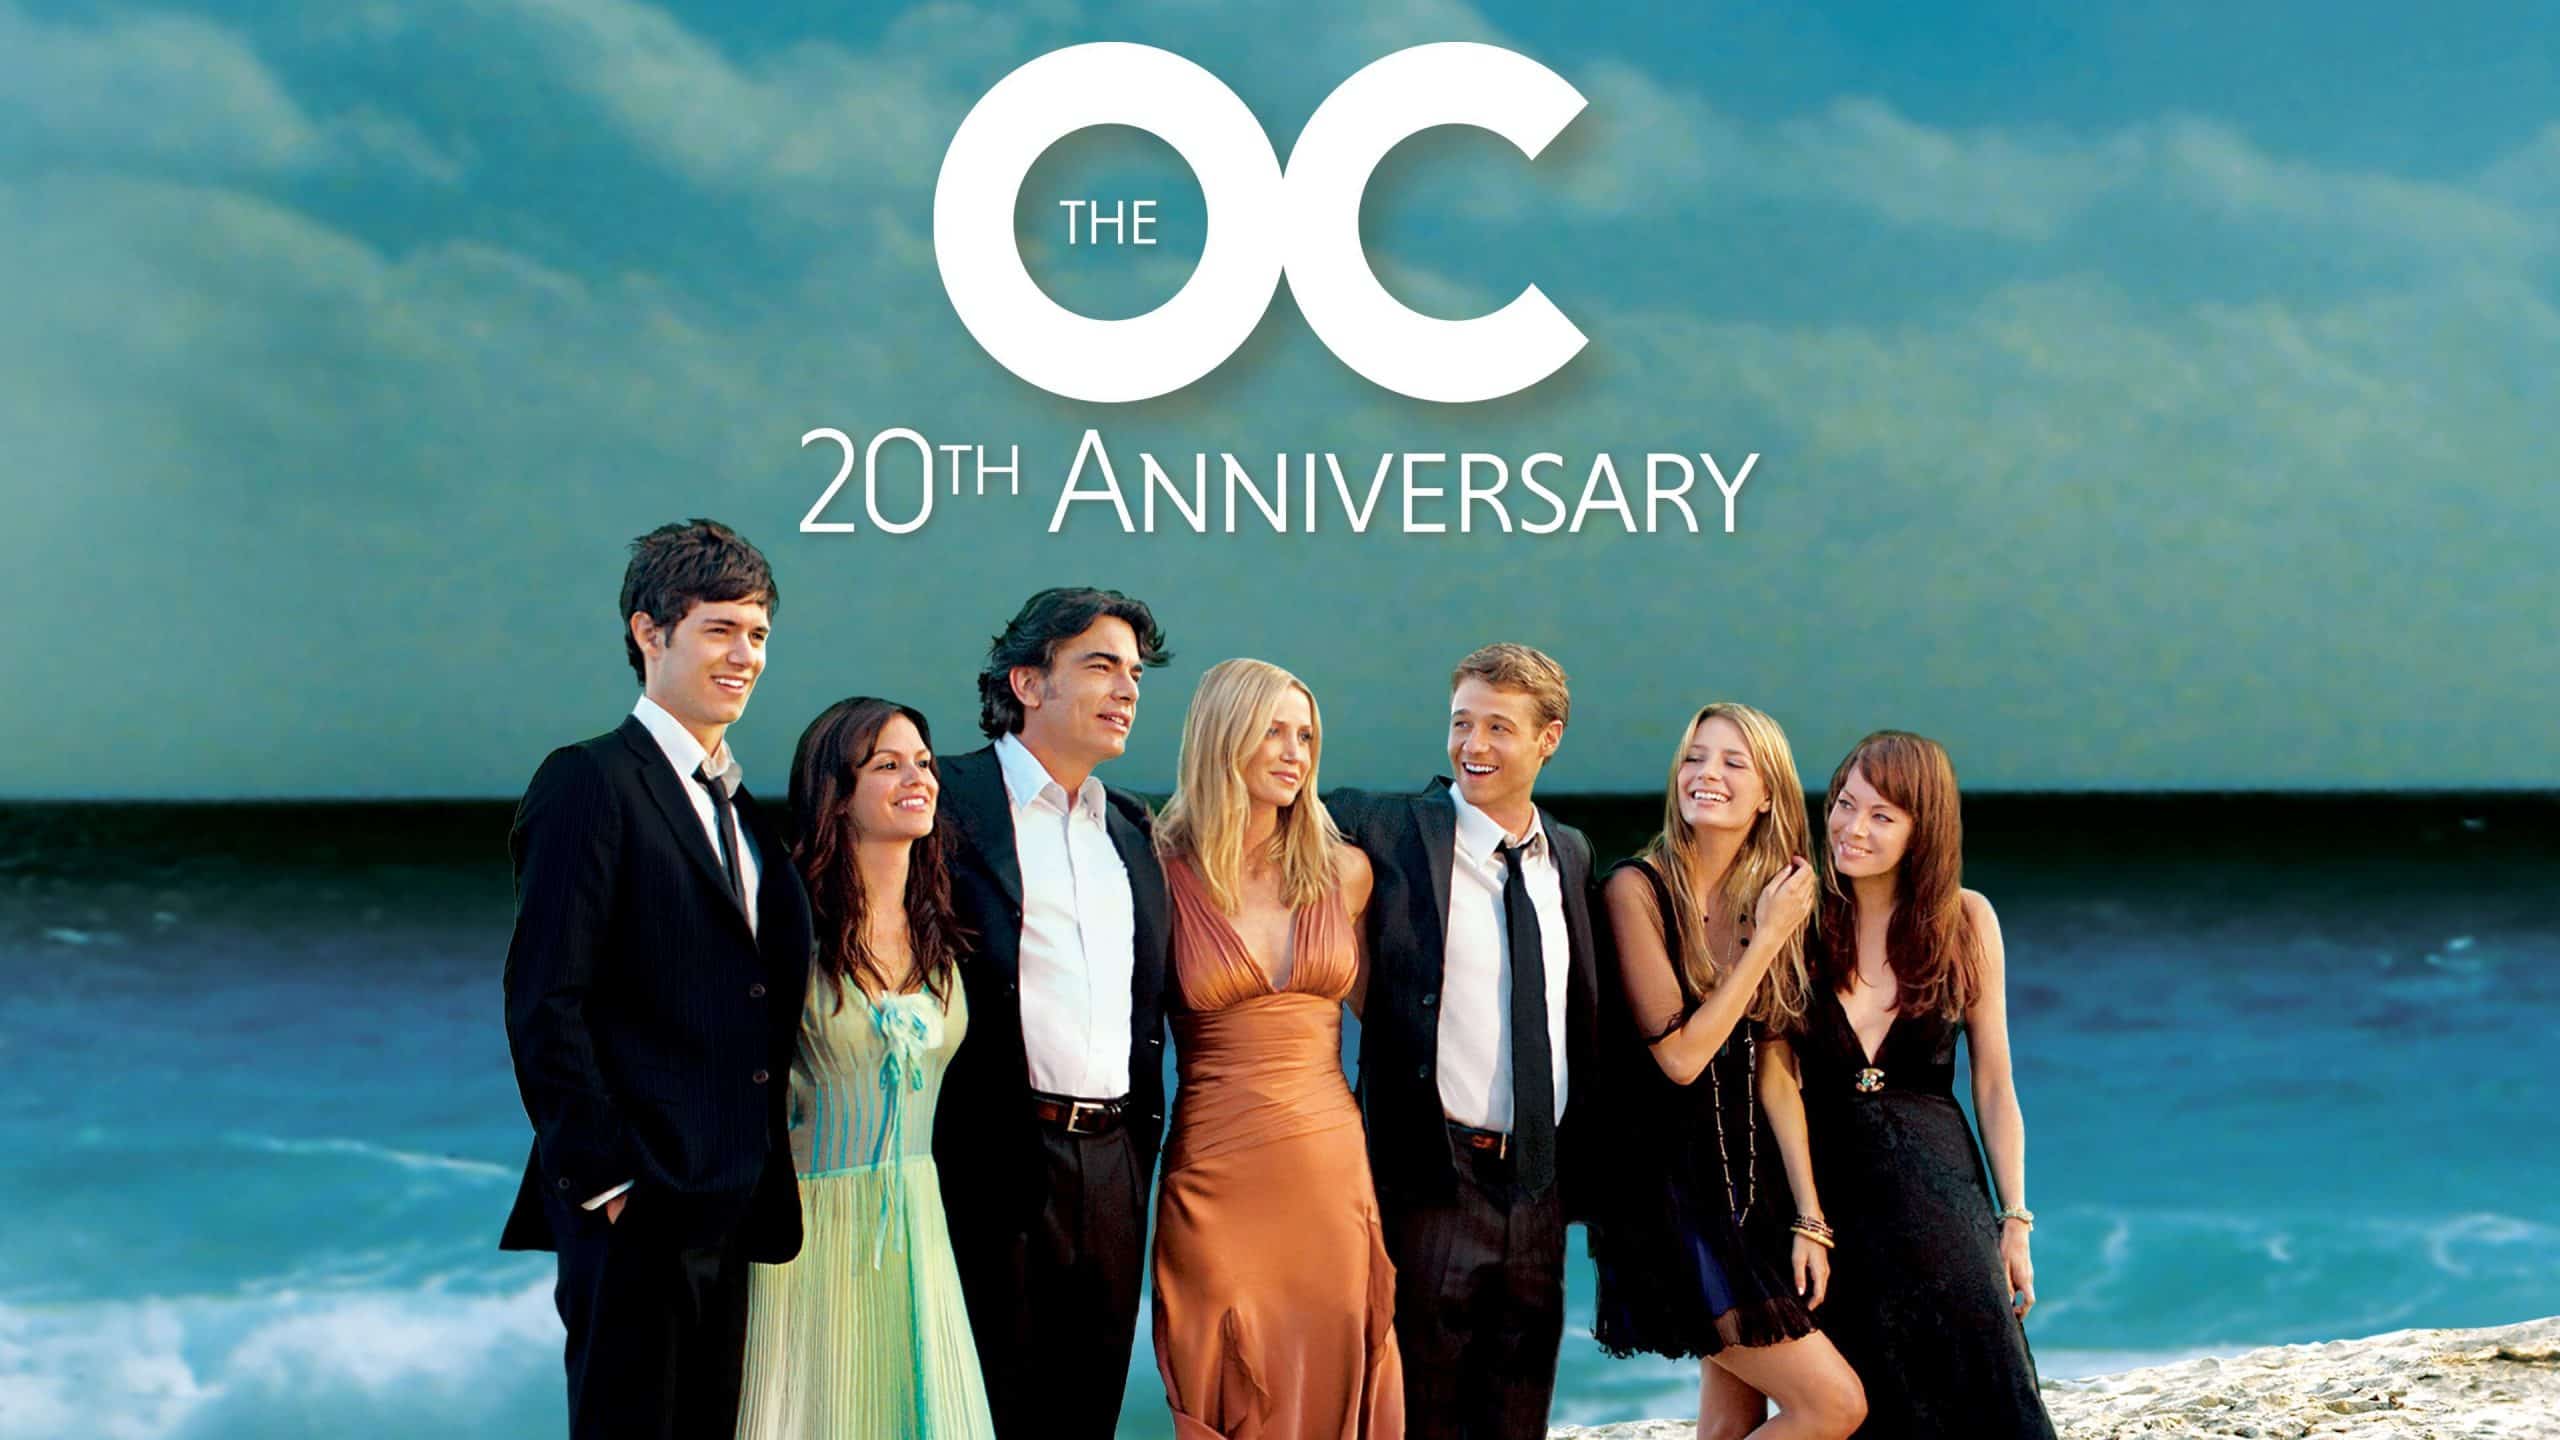 The O.C. 20th Anniversary